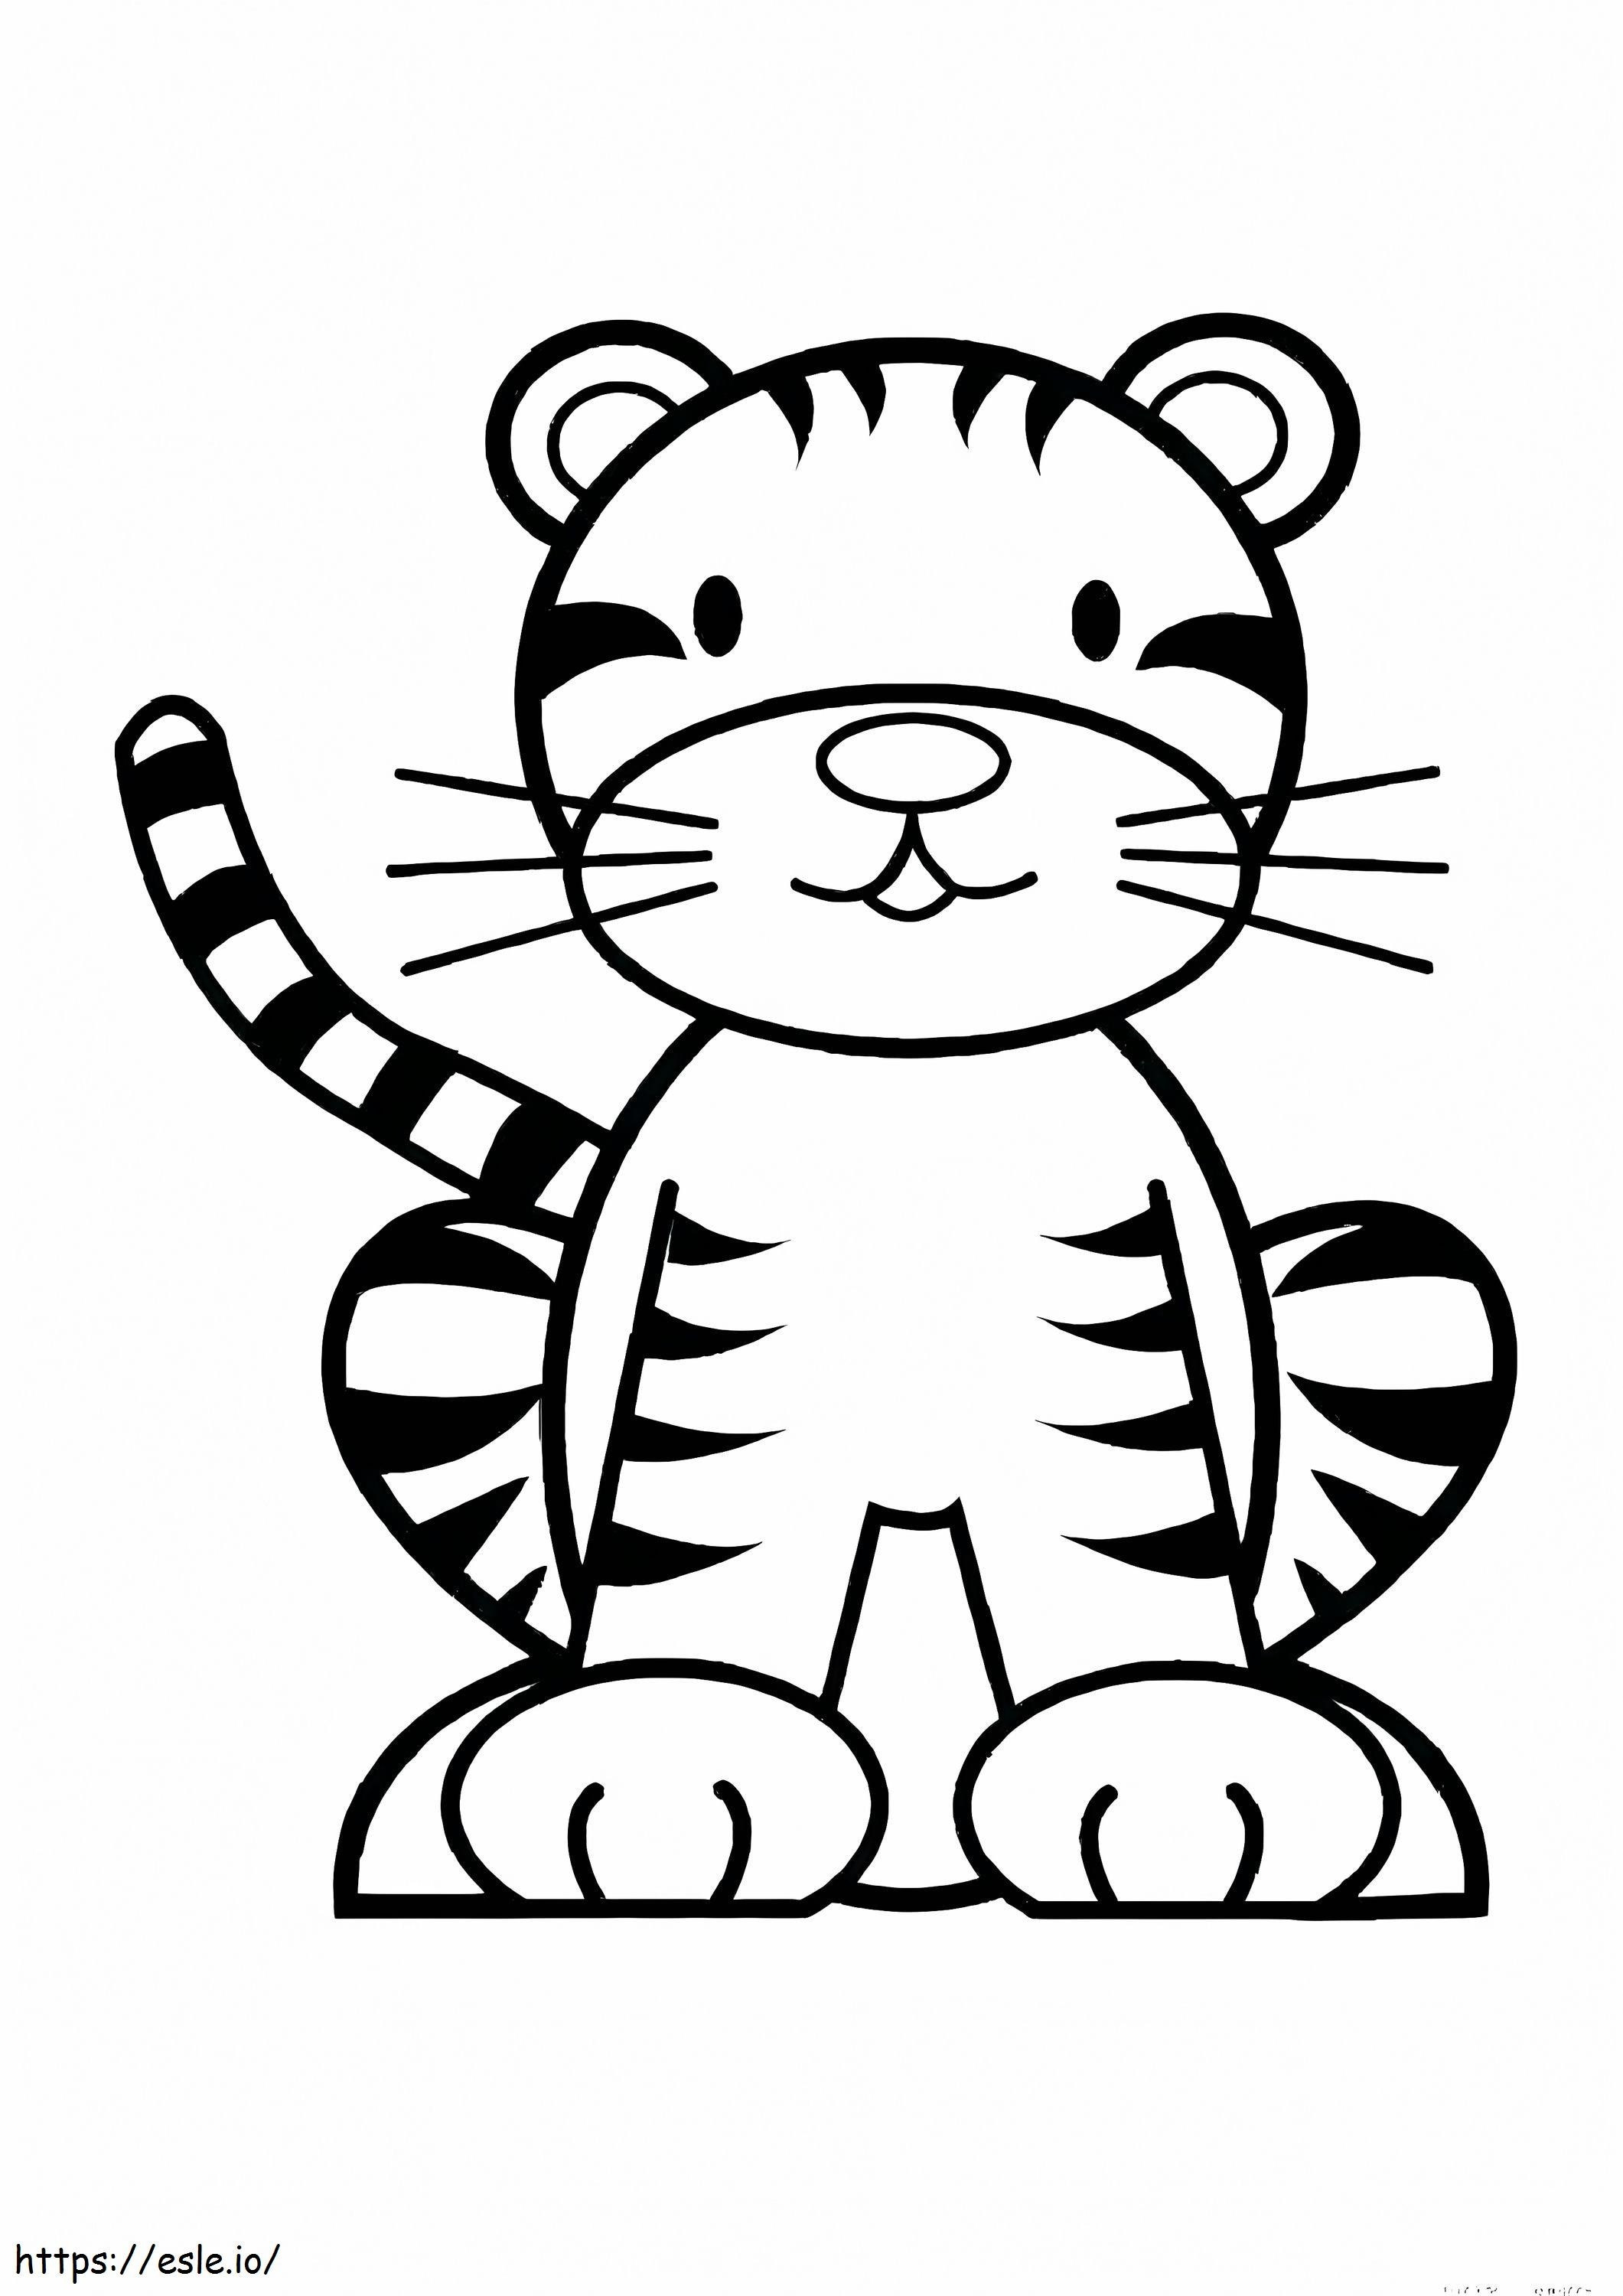 1539866831 Tigru Tigru Față de tigru drăguț Față de tigru drăguț Tigru drăguț Tigru drăguț Planse de colorat gratuit de imprimat Daniel Ti de colorat